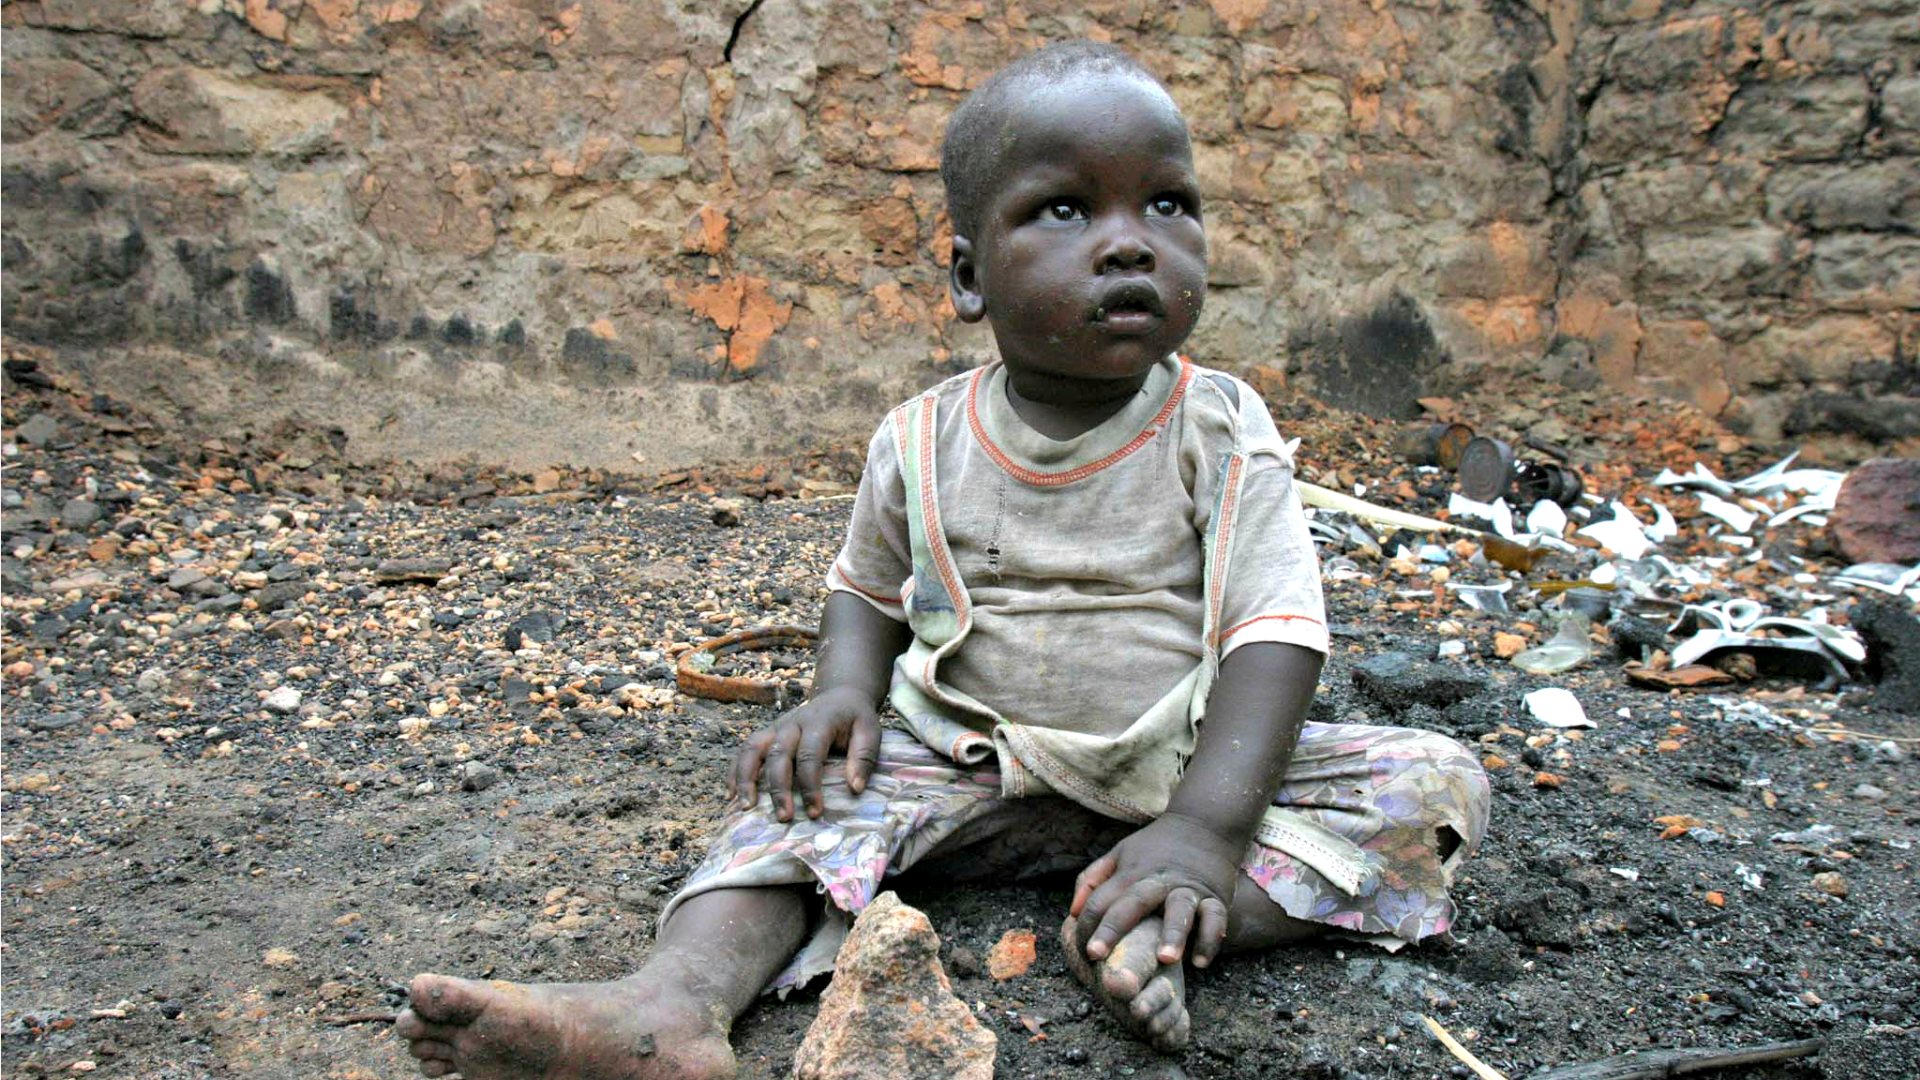 Les réfugiés centrafricains vivent dans des conditions très précaires (Photo: hdptcar/Flickr/CC BY-SA 2.0)